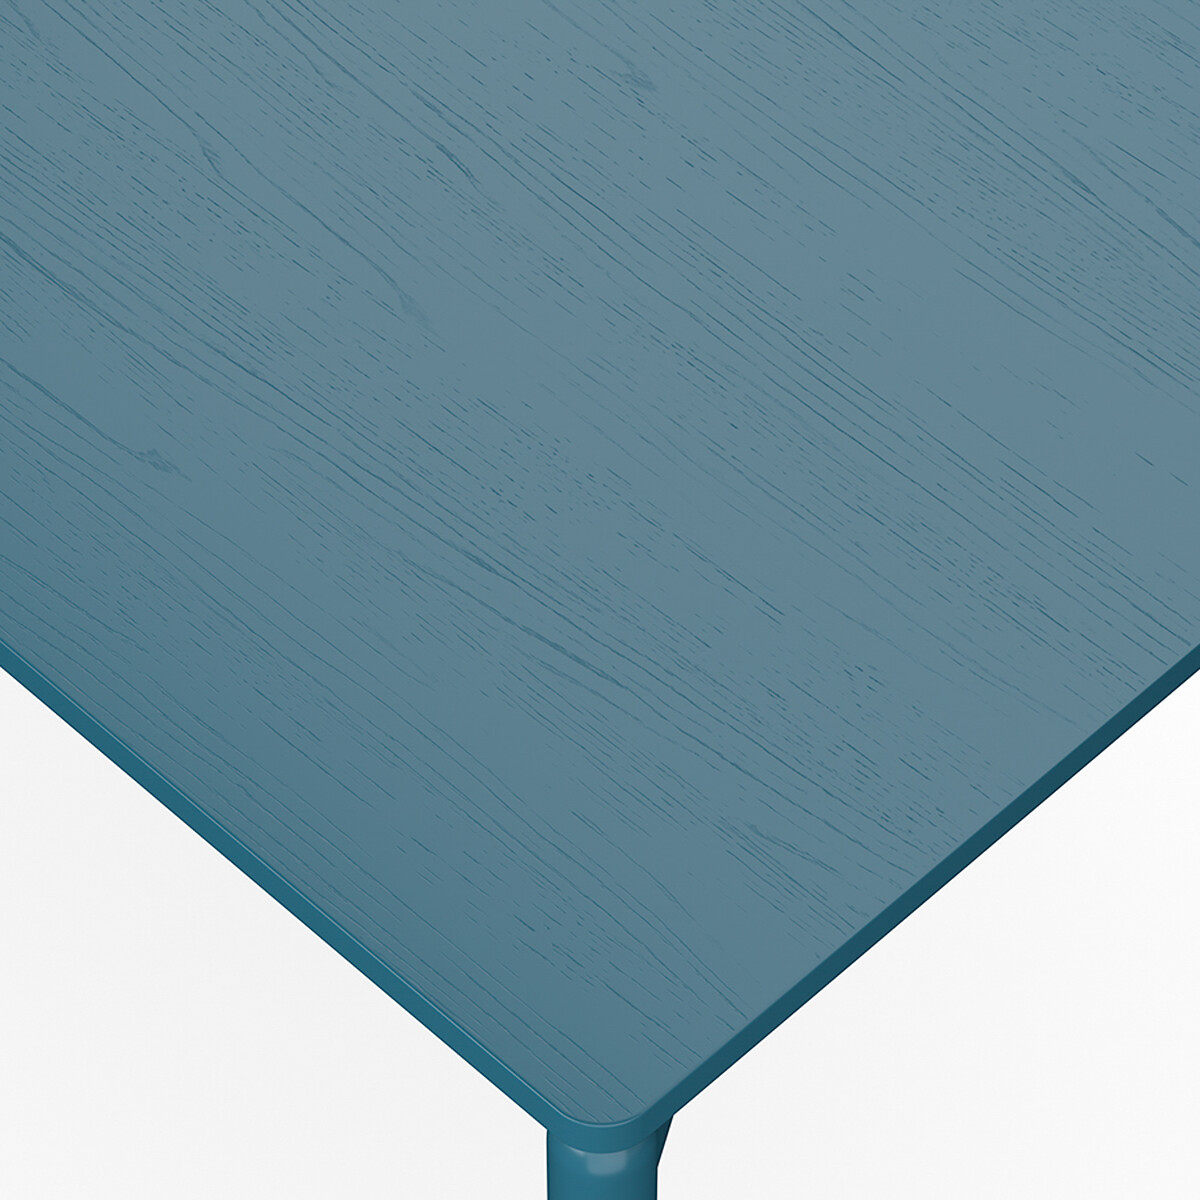 Стол обеденный Saga 75х120 см  4 персоны синий LaRedoute, размер 4 персоны - фото 5